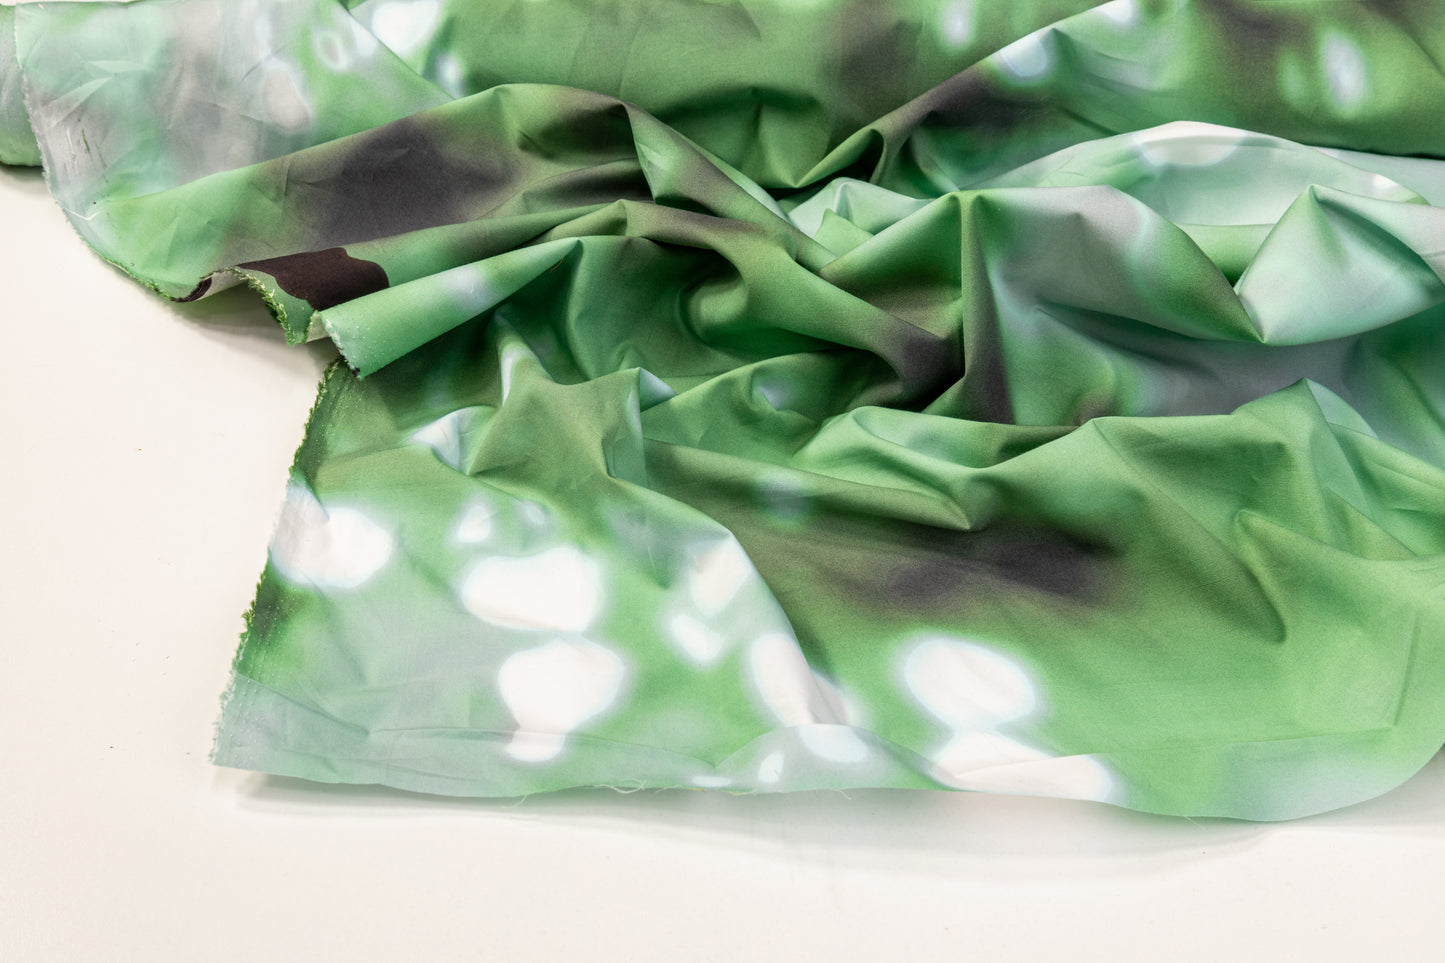 Tie-Dye Printed Cotton - Green / White / Black